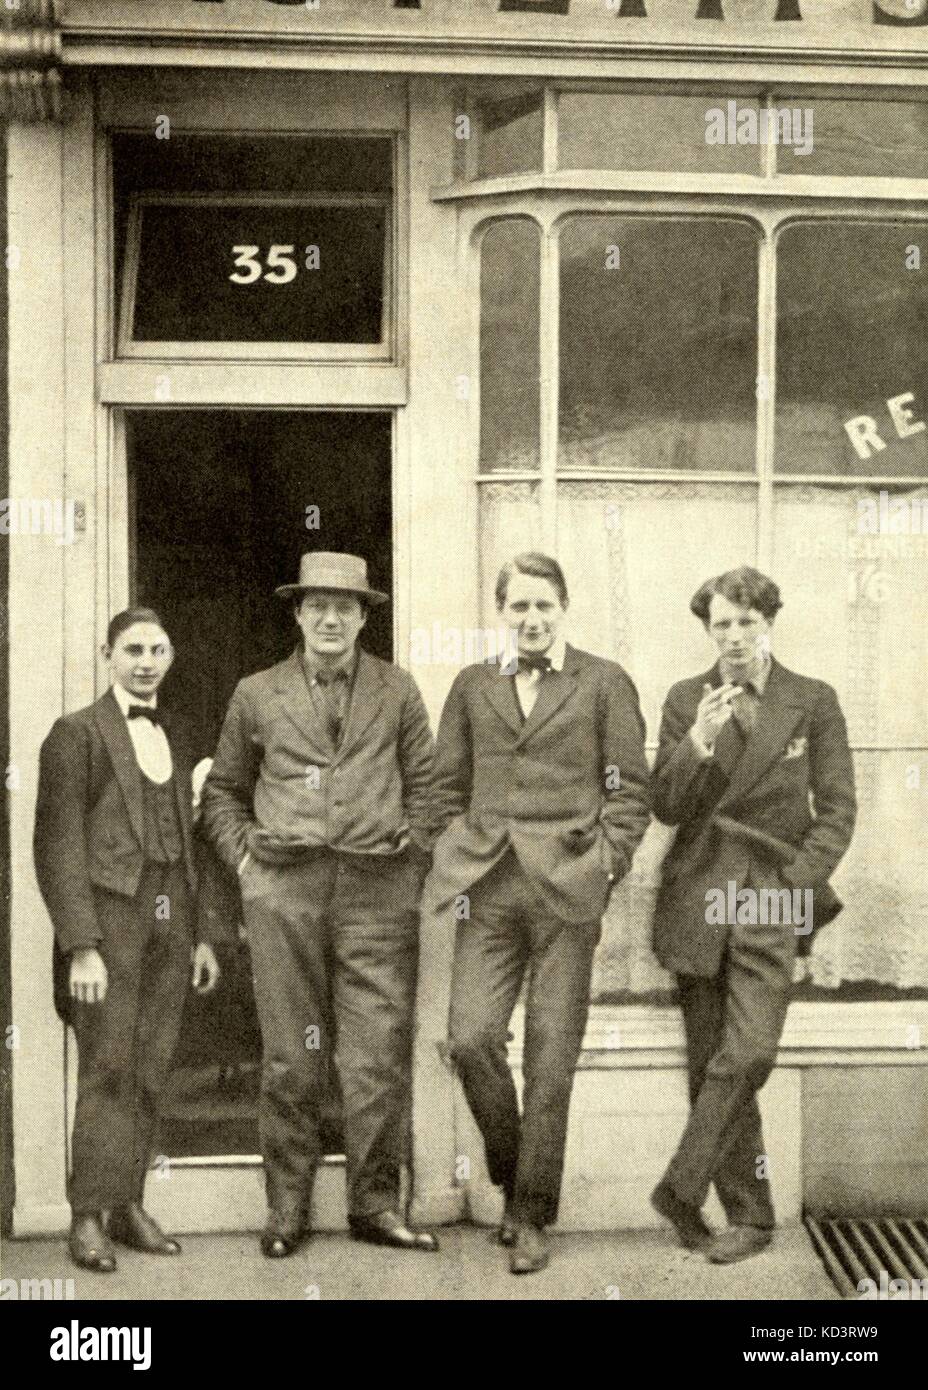 WARLOCK, Pietro. (Chiamato anche P. Heseltine) (c. 1915) da sinistra a destra: sconosciuto, Jacob Epstein (con HAT), Peter Warlock Evan Morgan. Inglese e compositore musicologo (1894-1930) Foto Stock